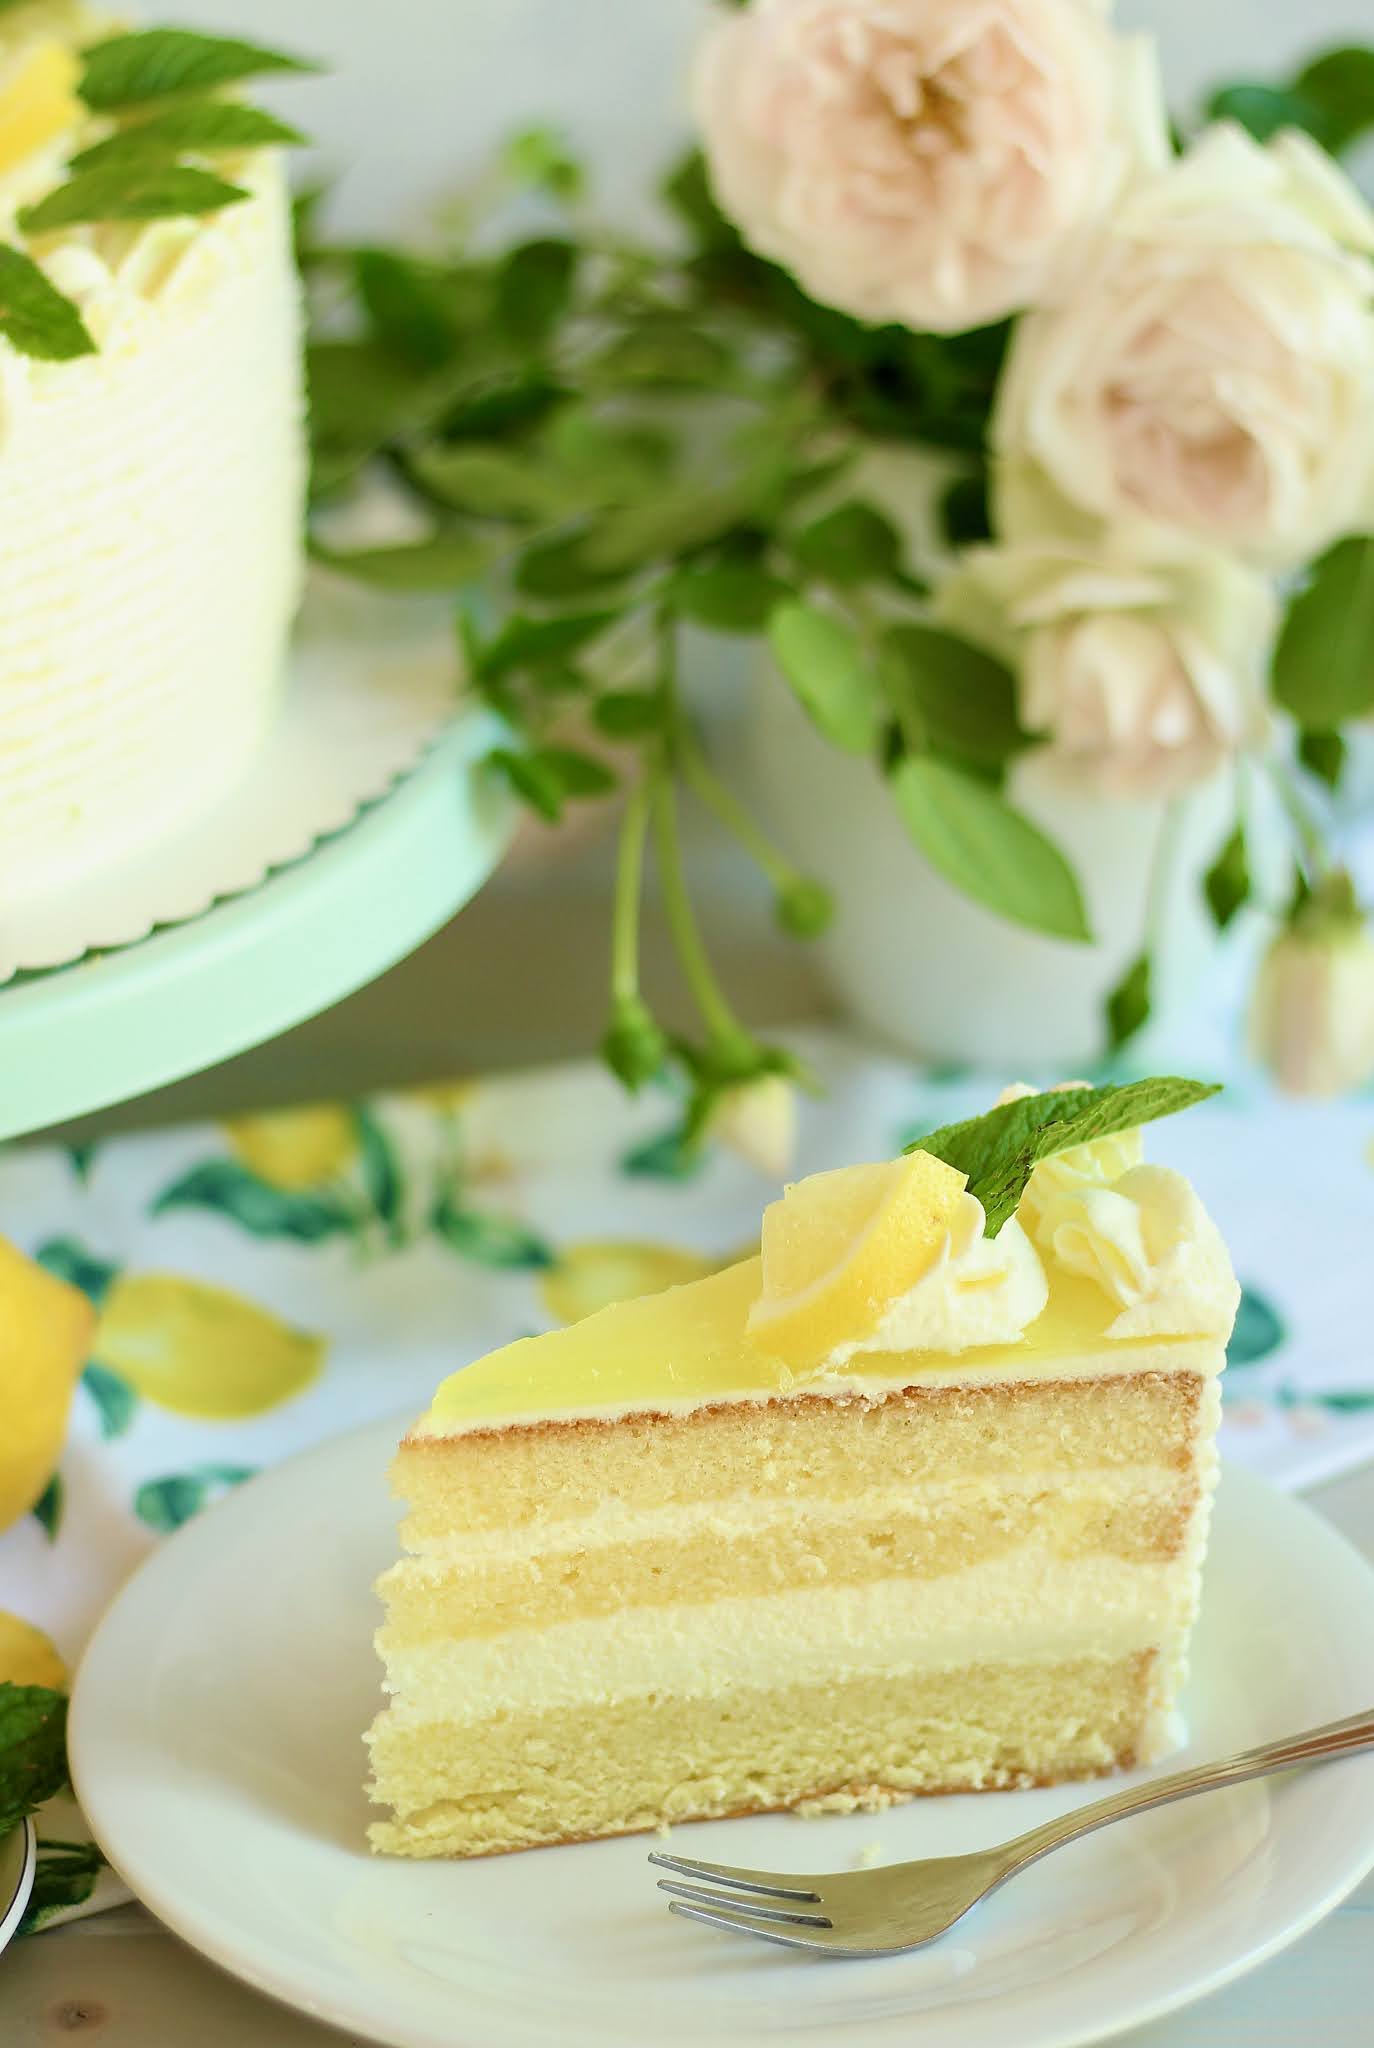 🍋 Super erfrischende Zitronen-Joghurt-Torte mit Götterspeise! 🍋 | Rezept und Video von Sugarprincess